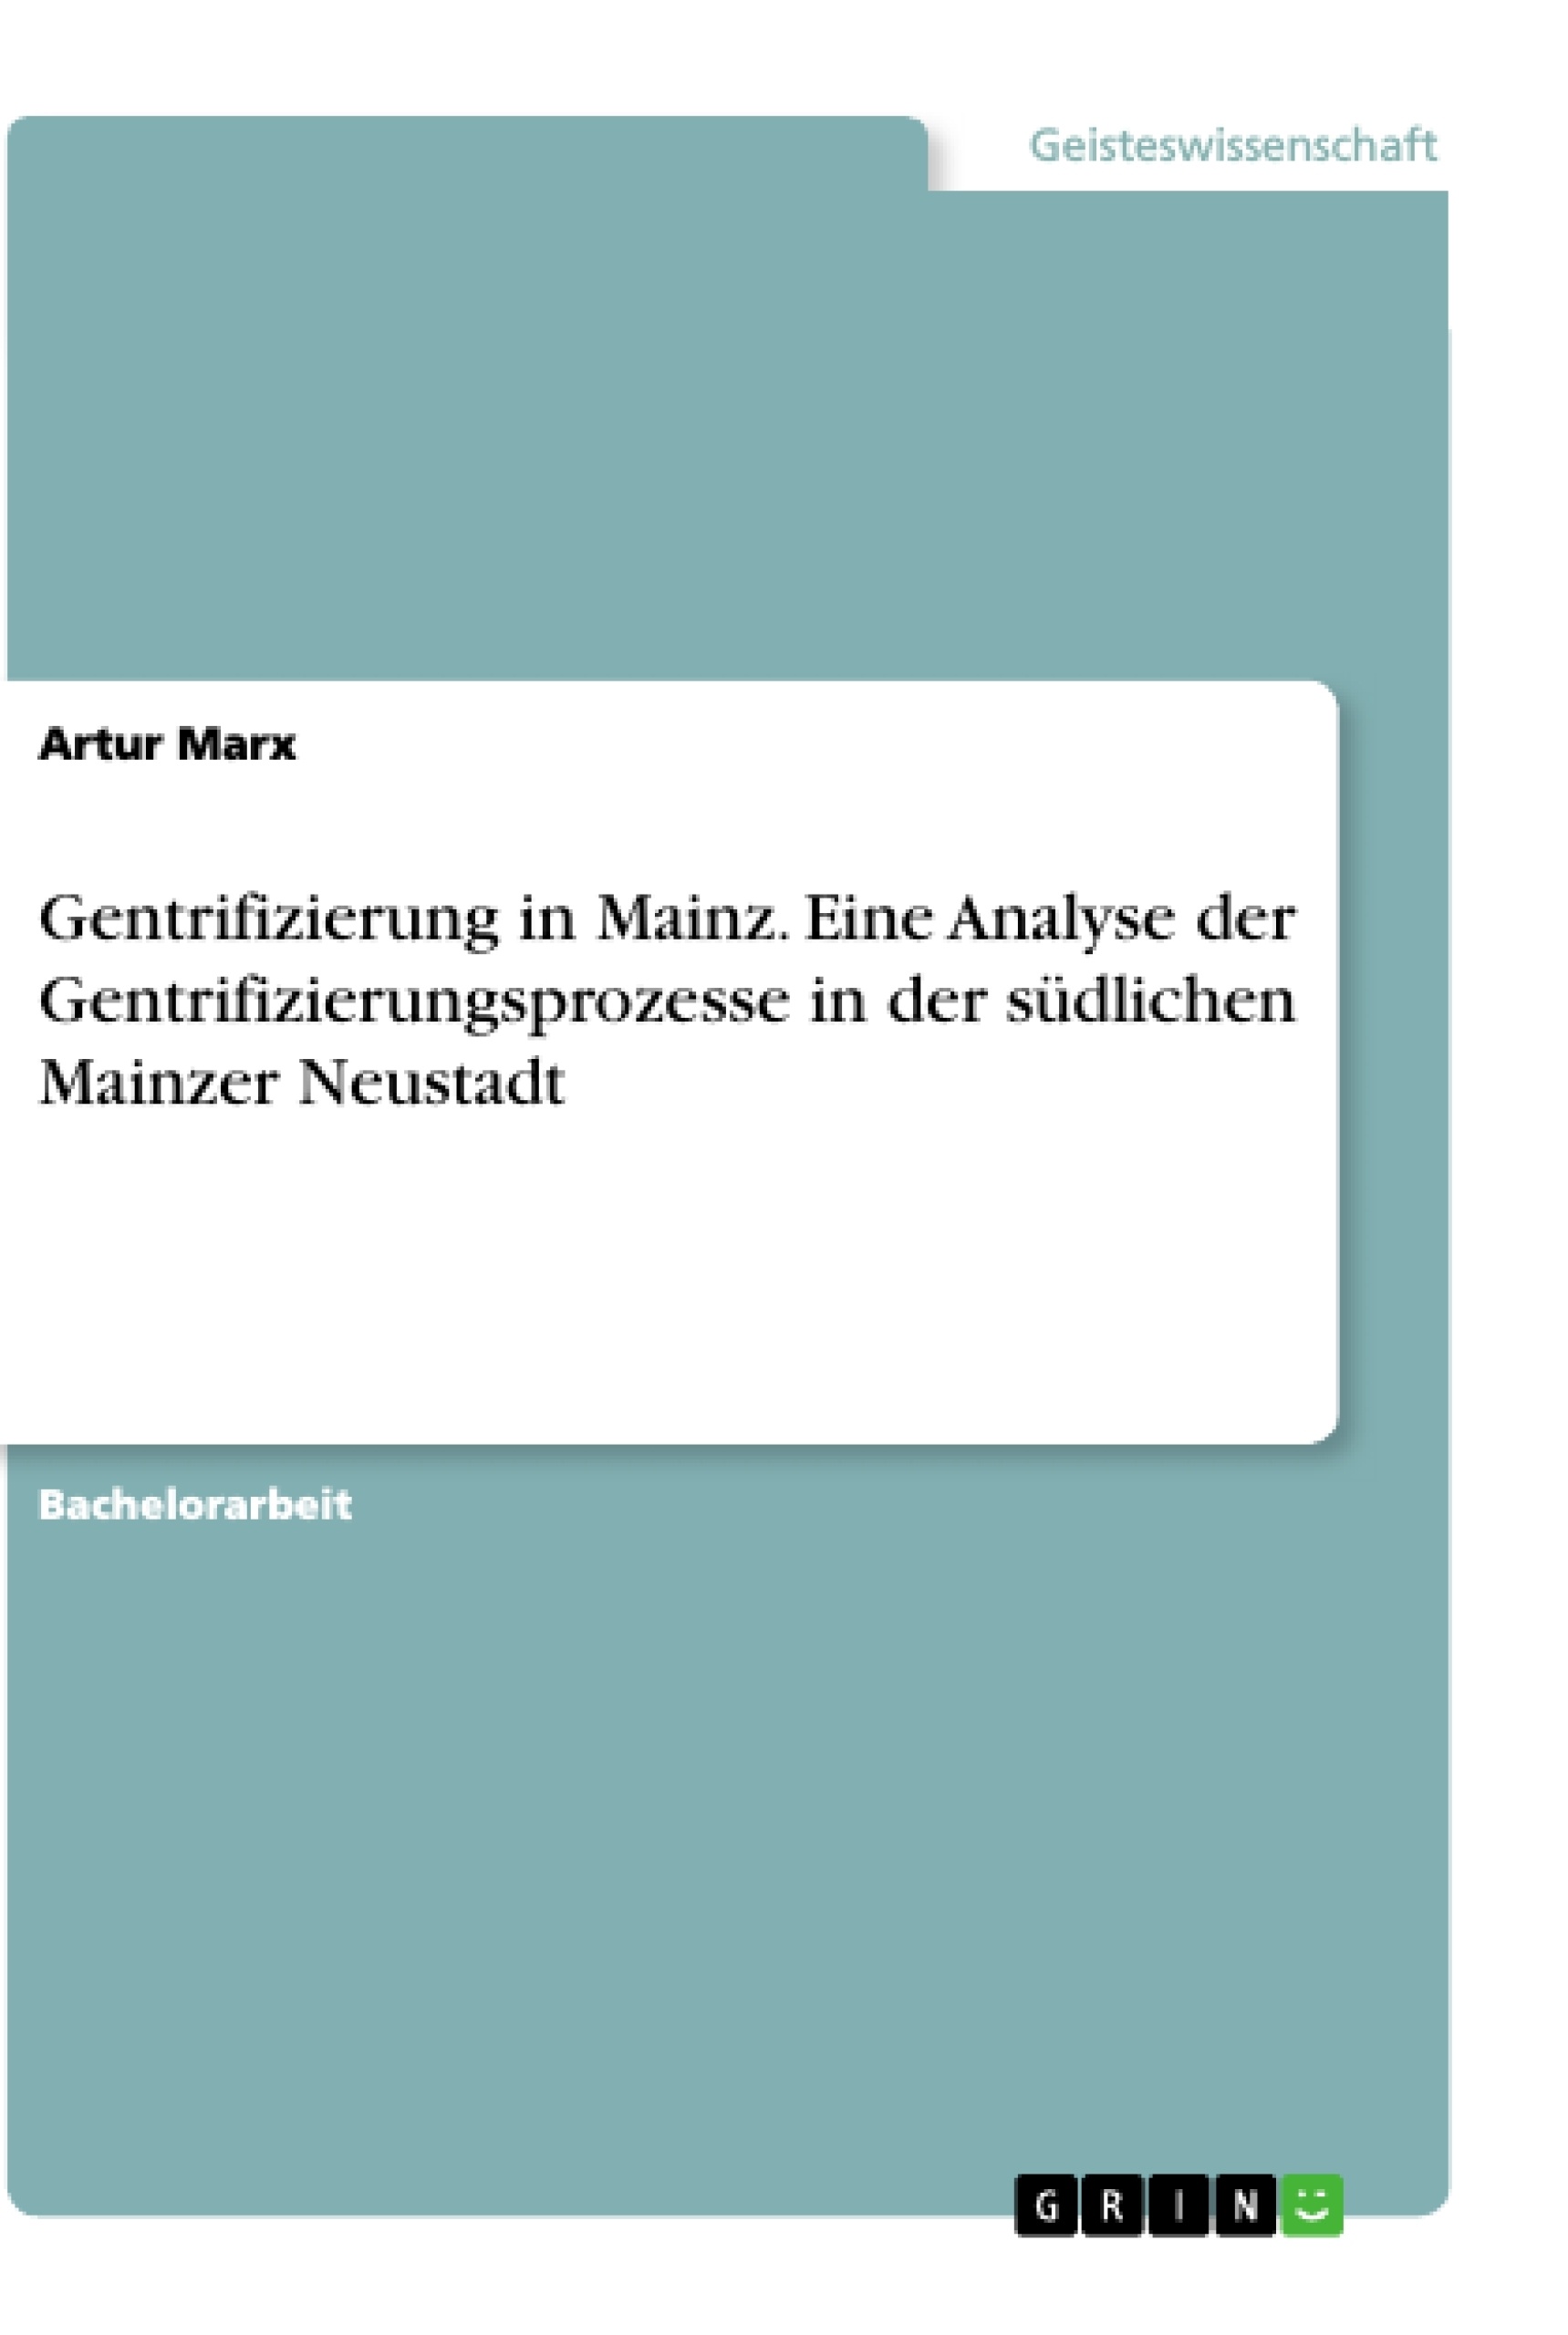 Titre: Gentrifizierung in Mainz. Eine Analyse der Gentrifizierungsprozesse in der südlichen Mainzer Neustadt